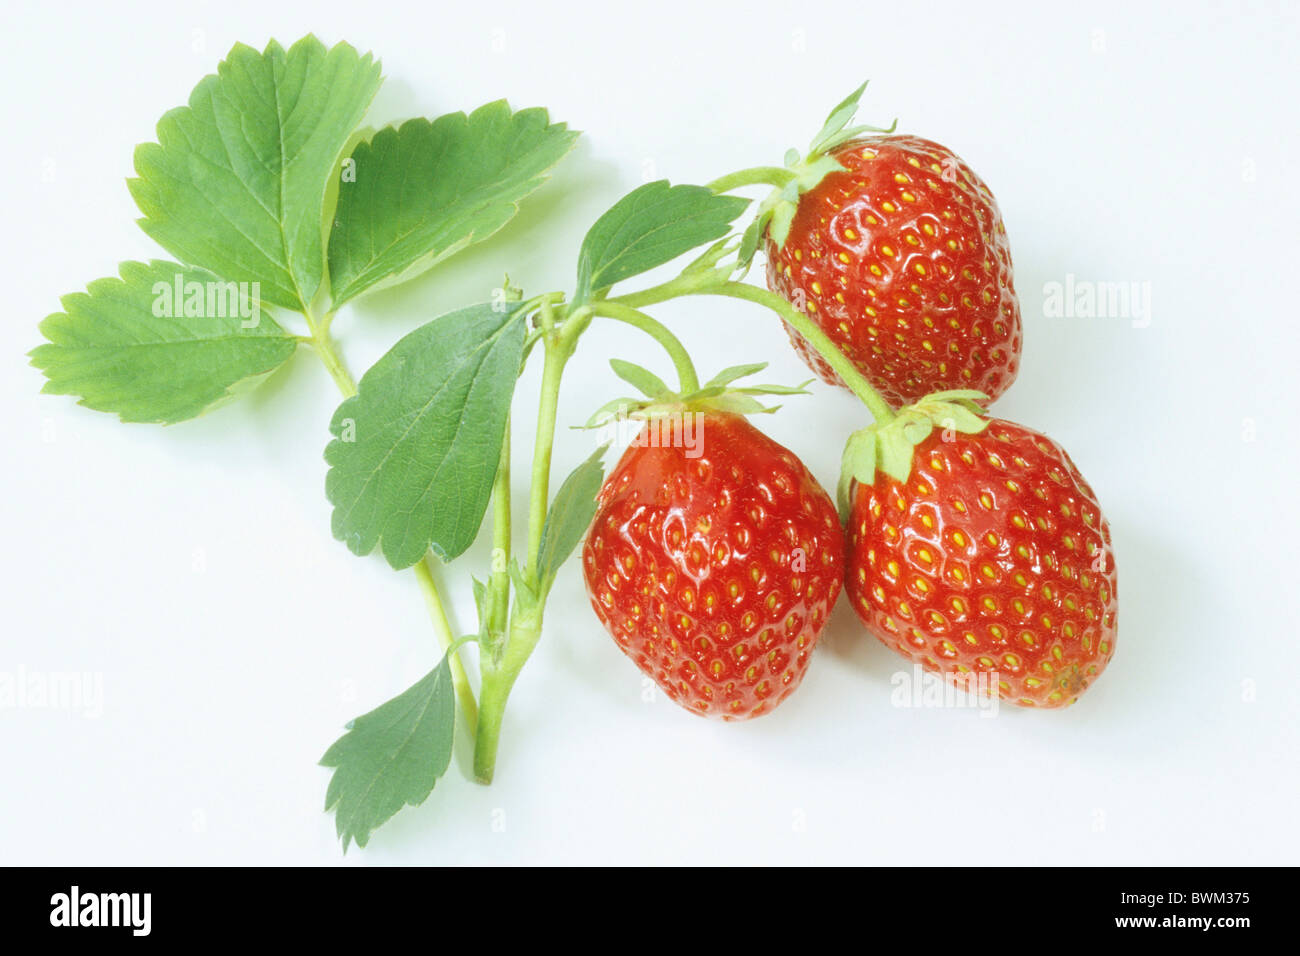 Garten-Erdbeere (Fragaria X ananassa), reife Erdbeeren mit Blättern, Studio Bild. Stockfoto